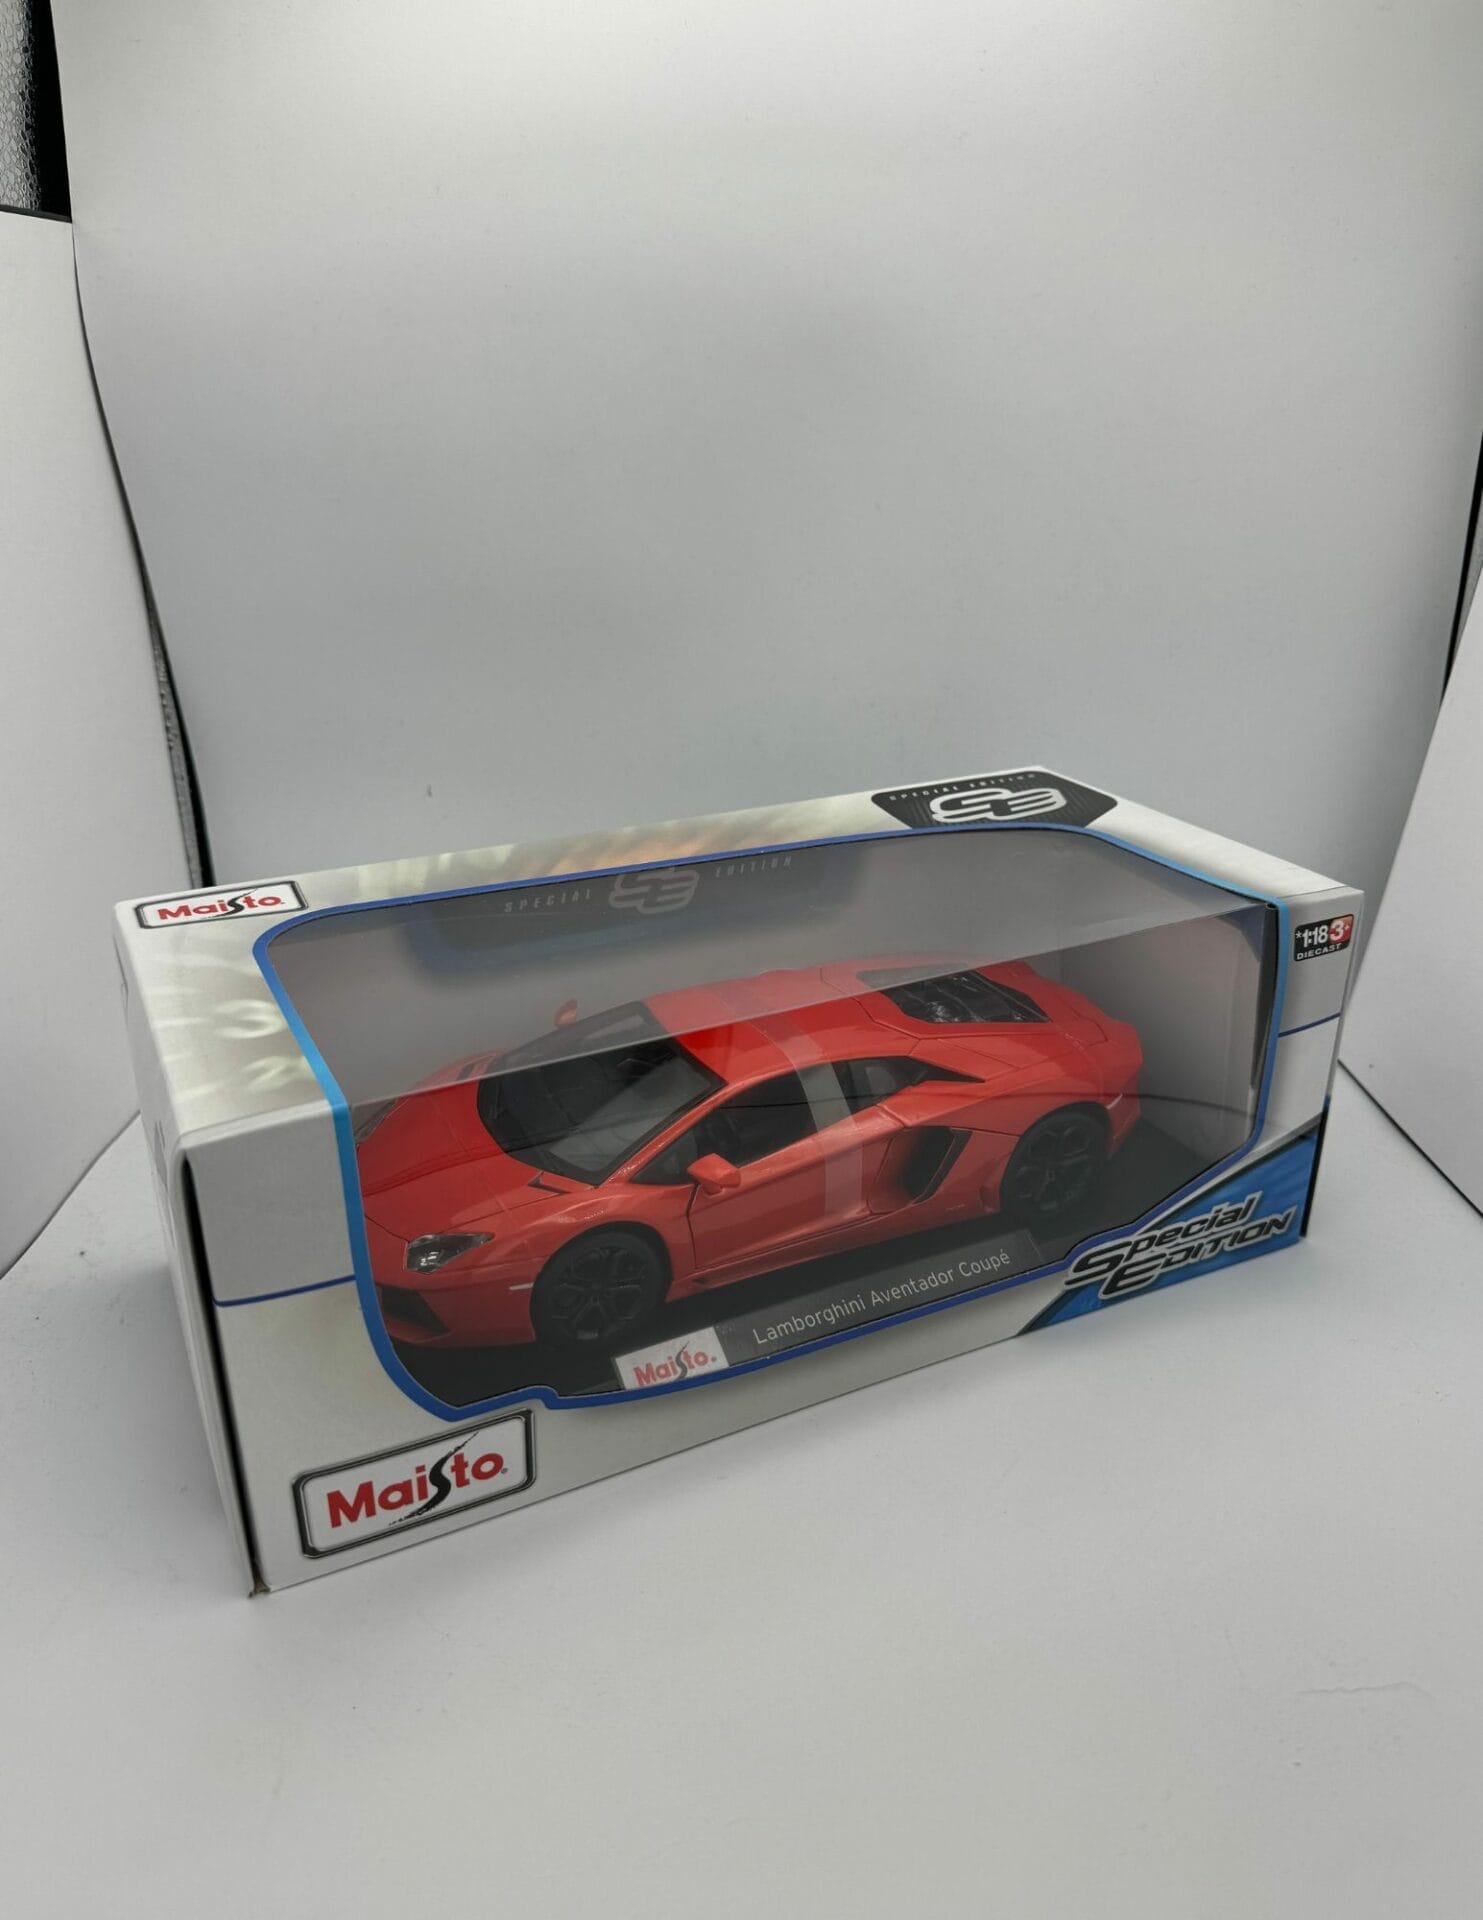 MAISTO 1:18 Scale Special Edition Lamborghini Aventador Coupe Red